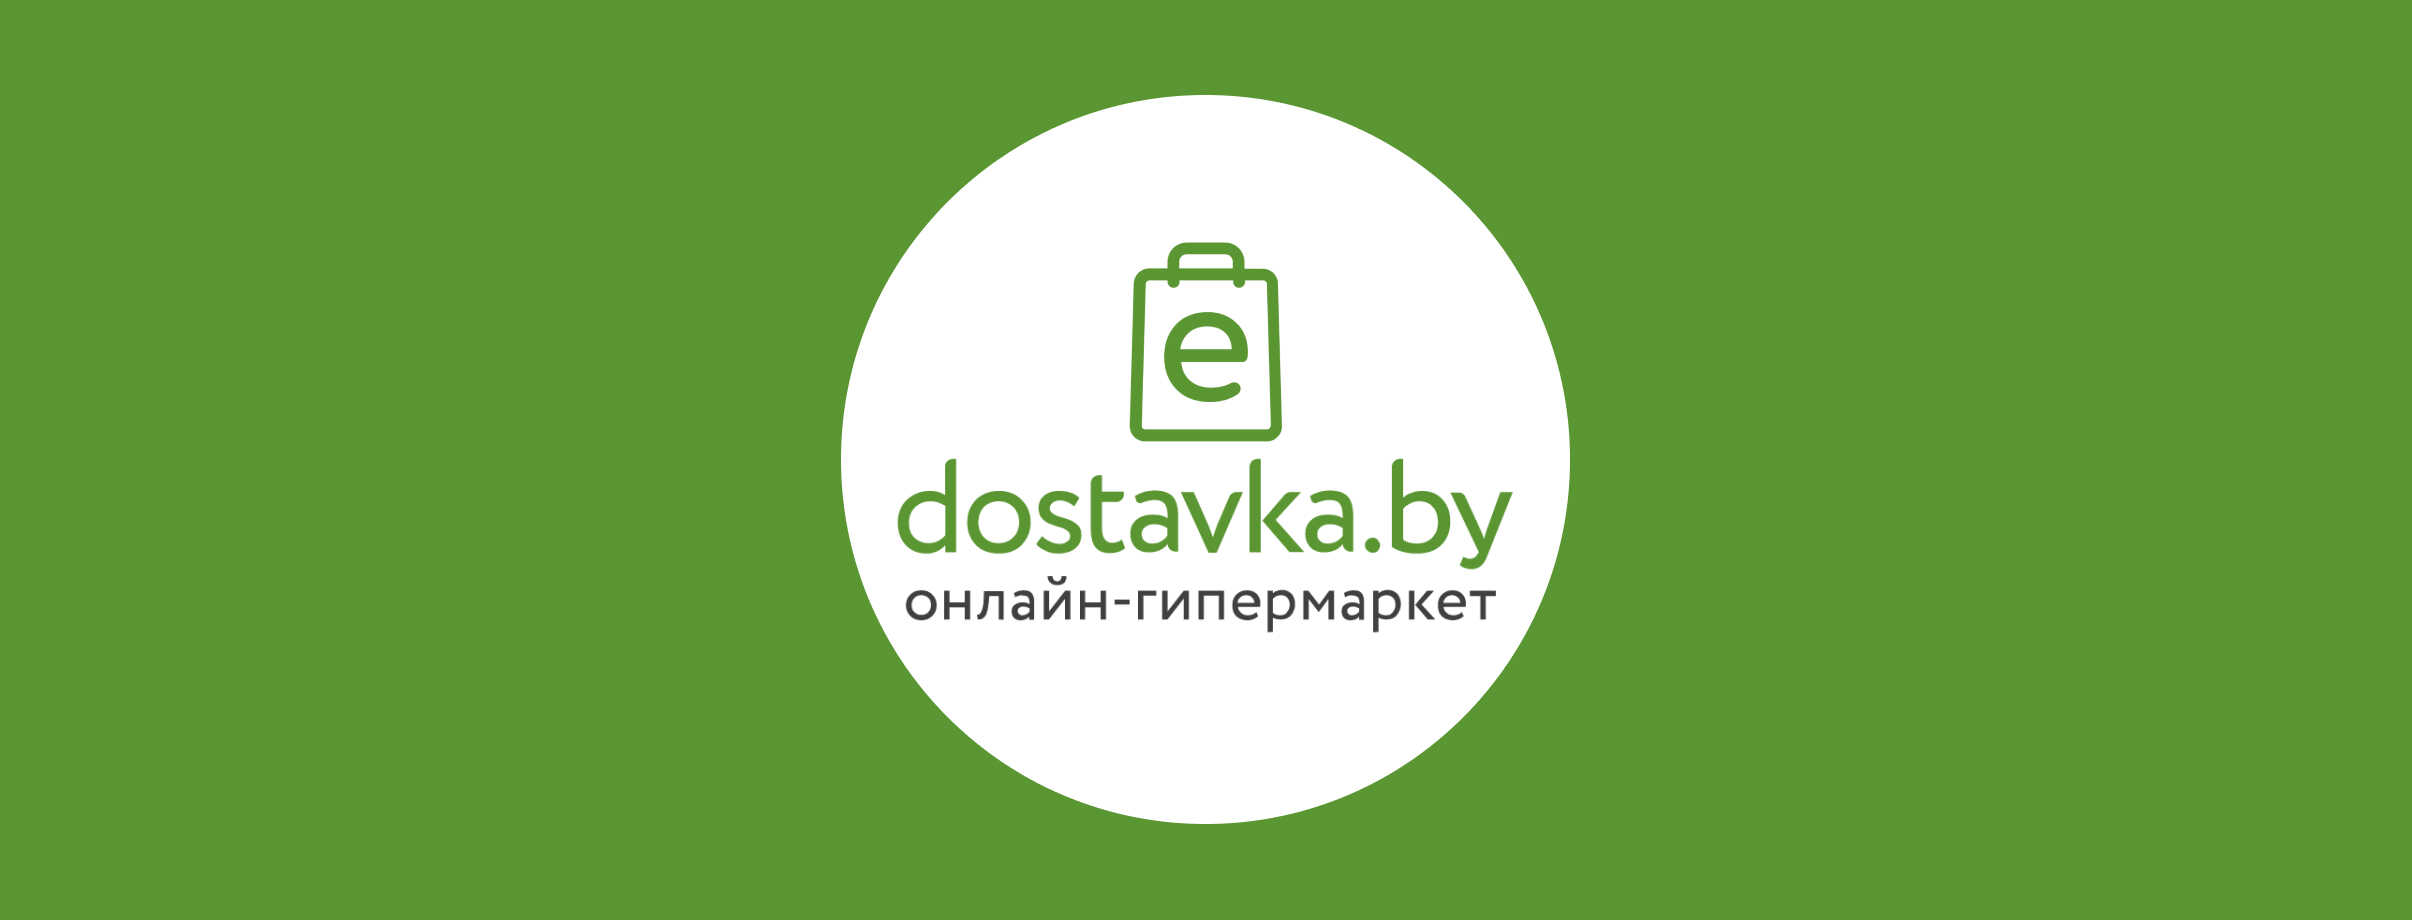 😃 Скидки для пользователей e-dostavka.by